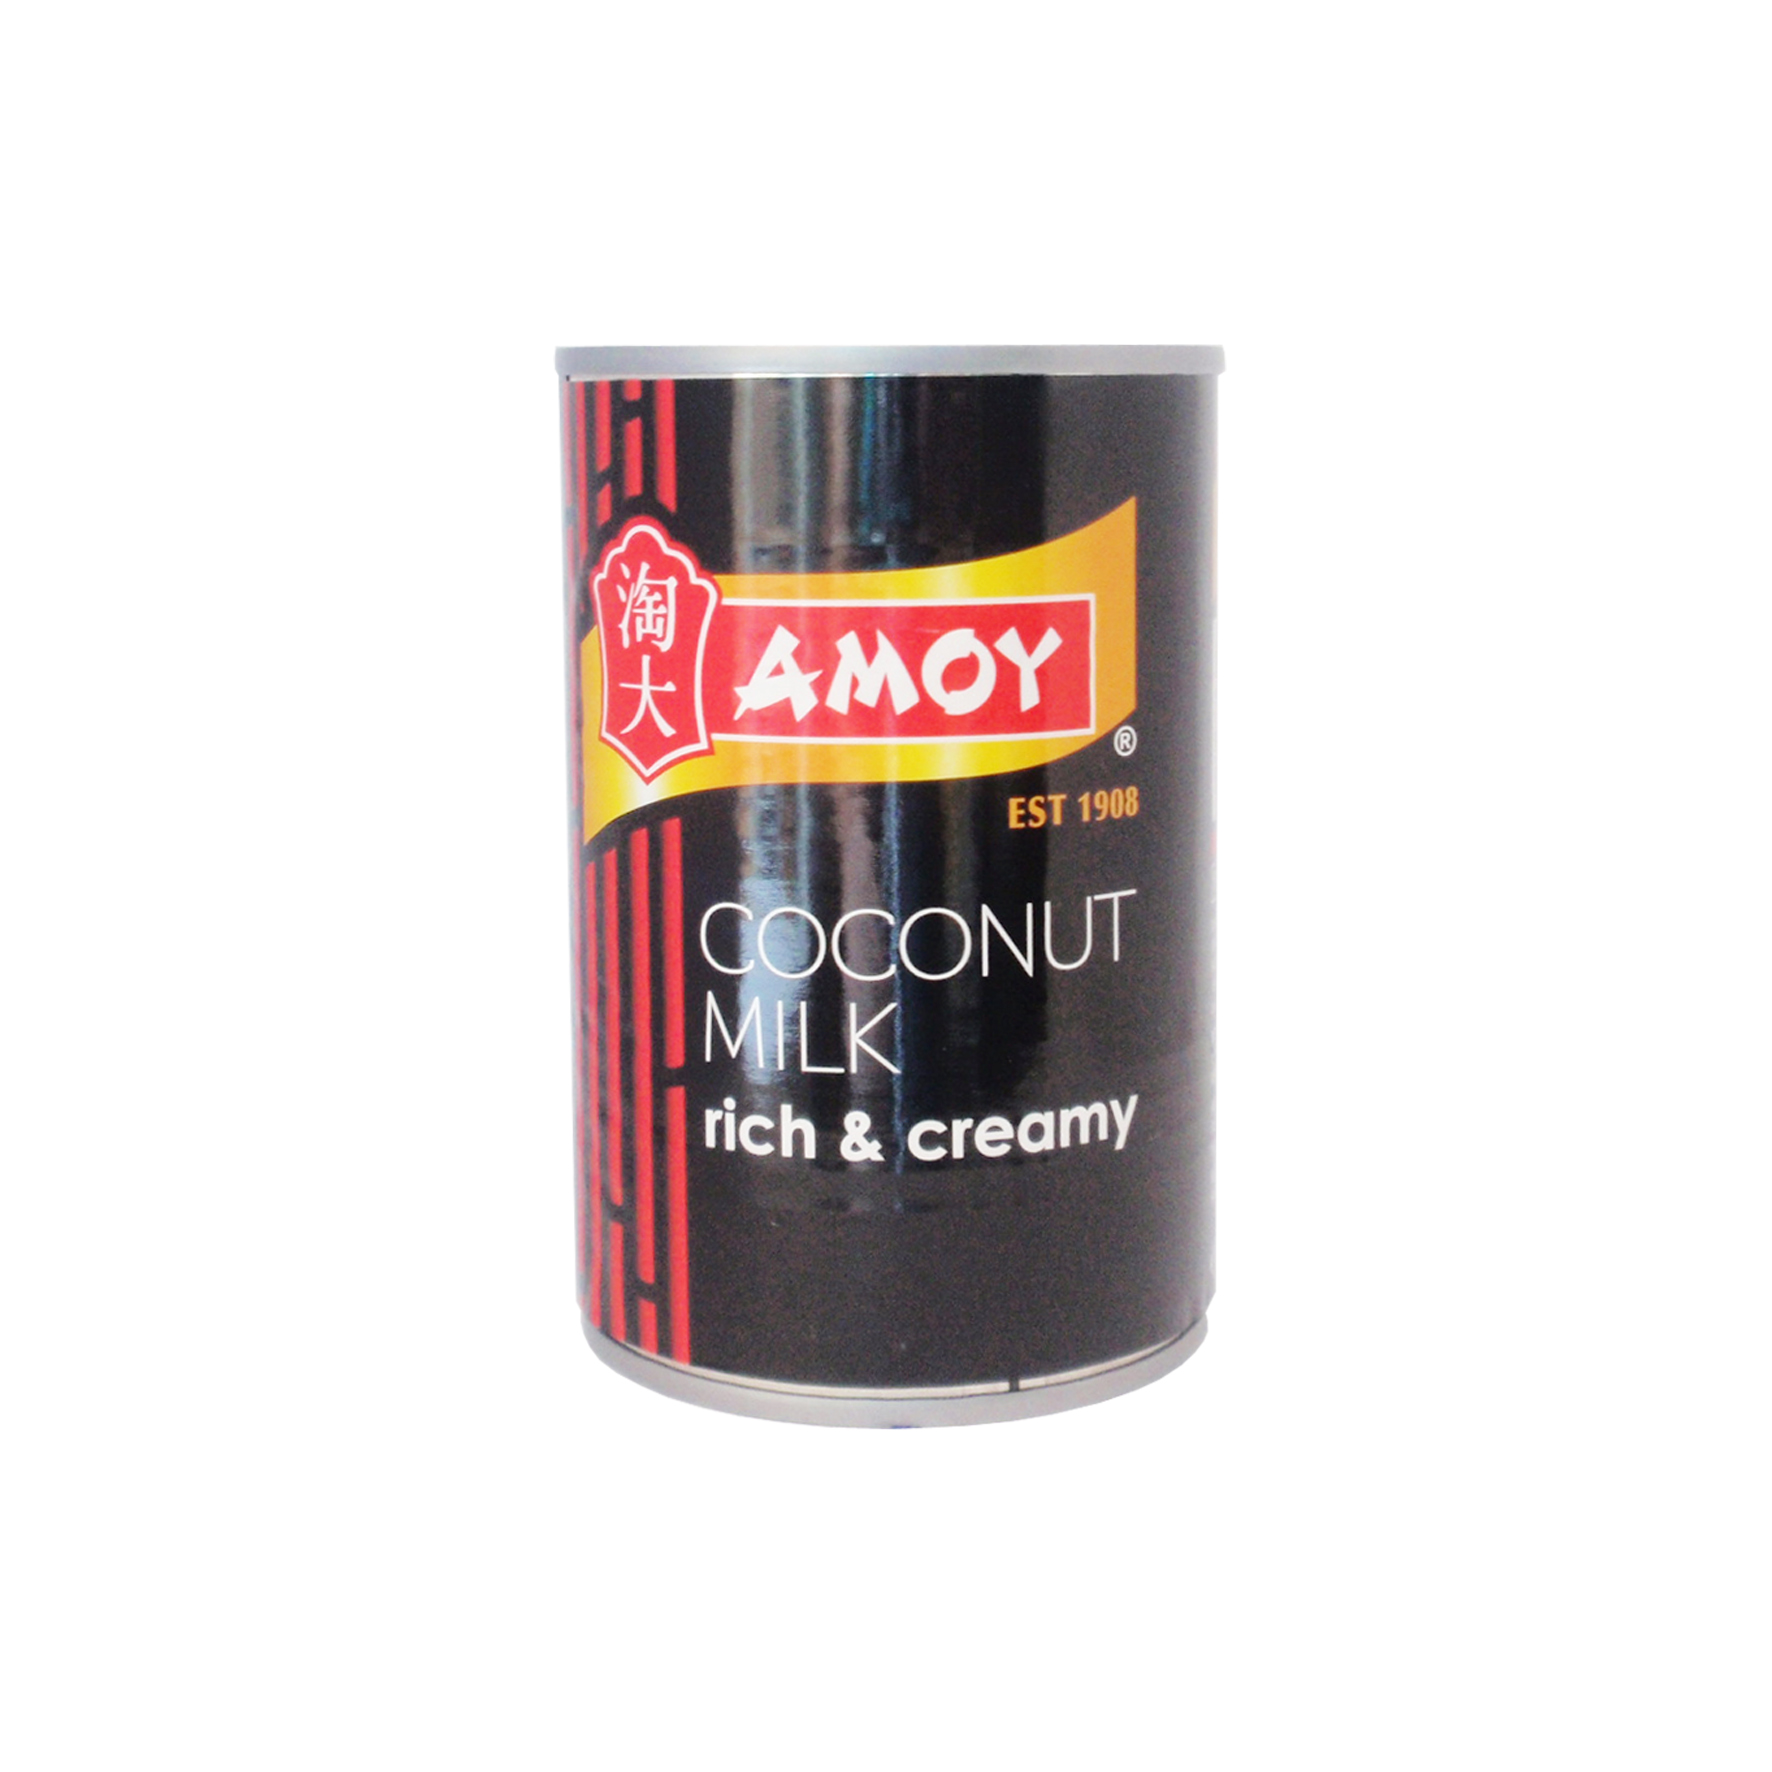 Amoy coconut milk/leche coco